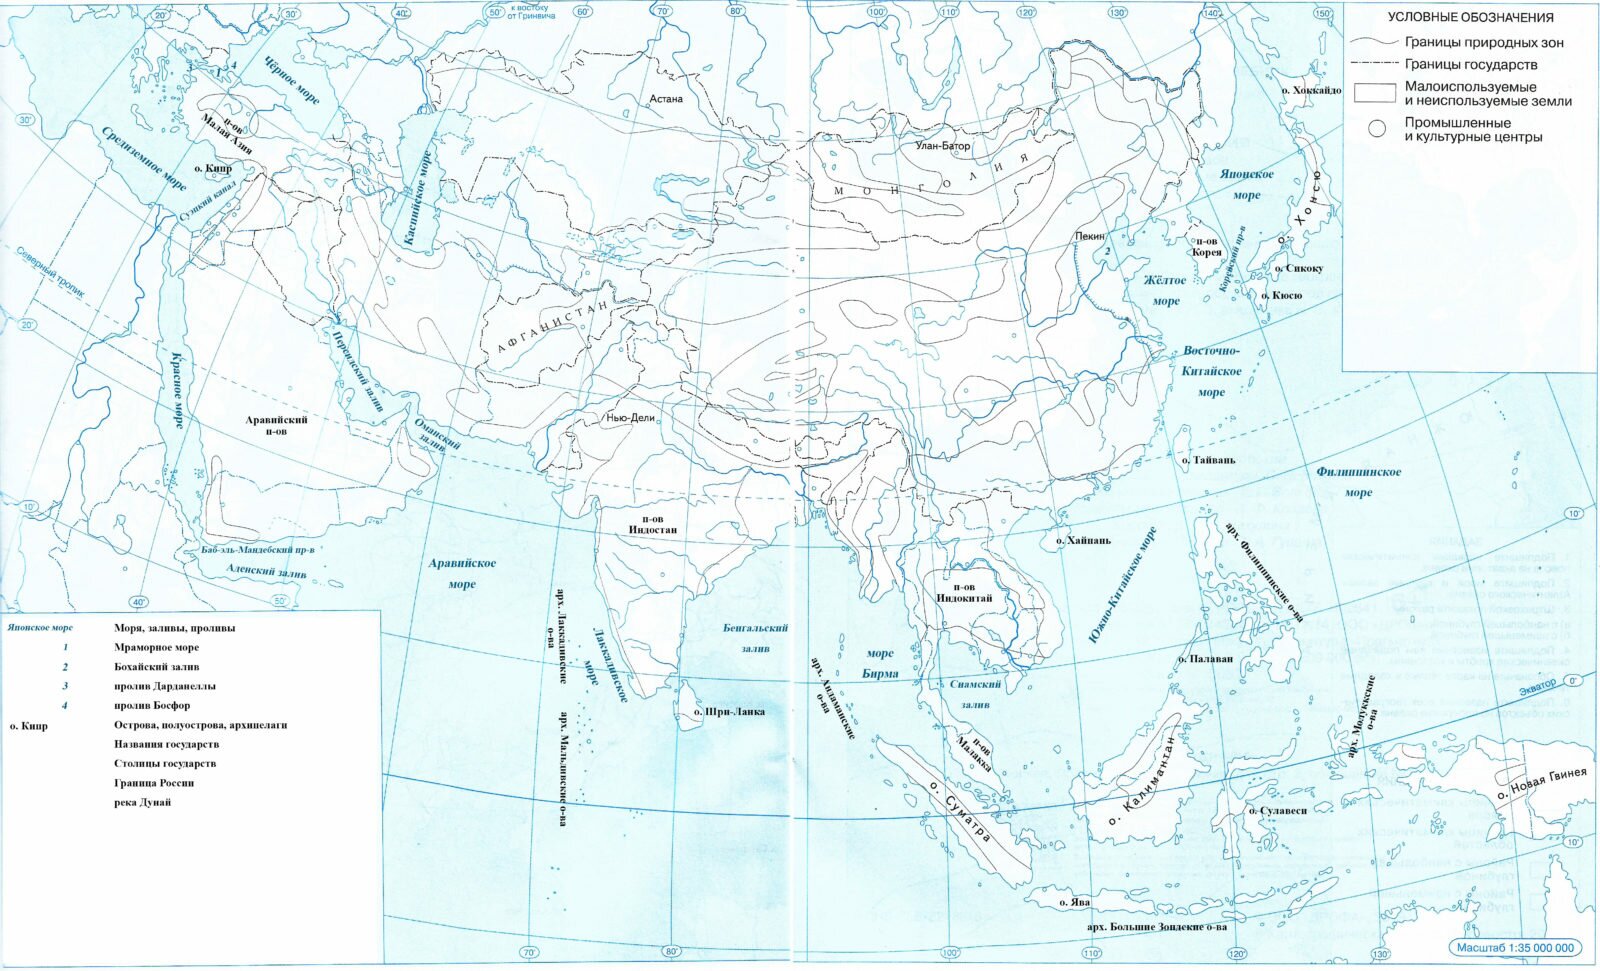 Политическая контурная карта зарубежной Азии